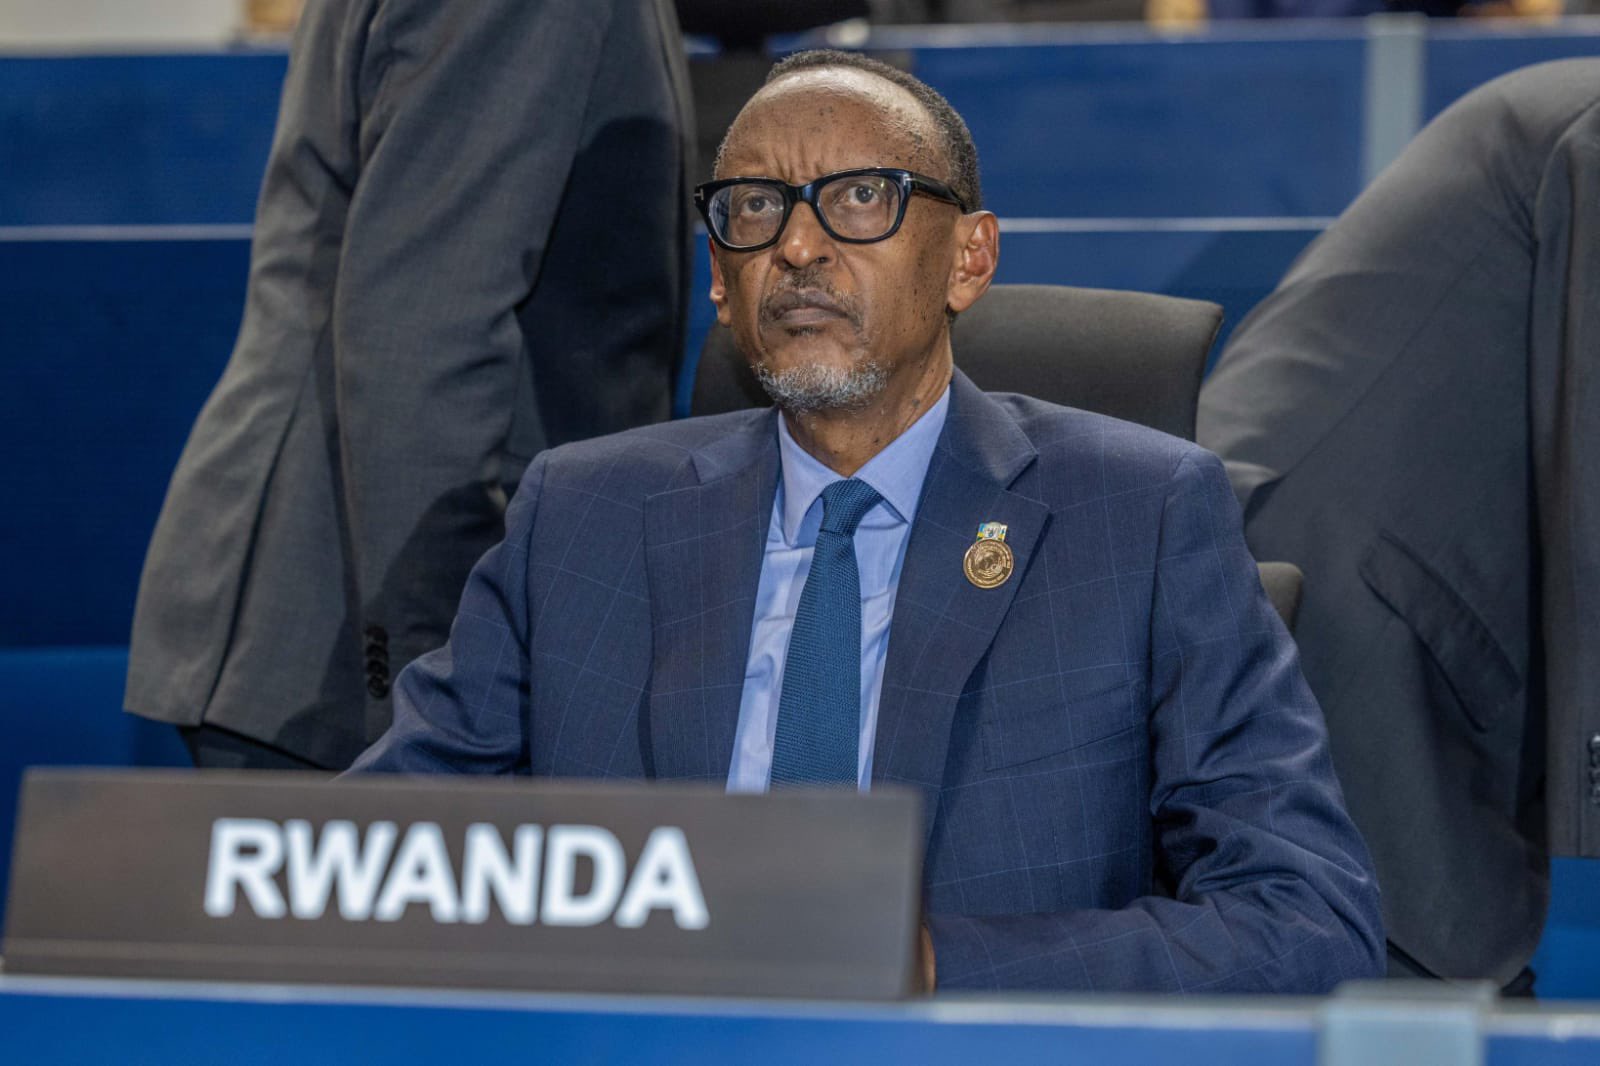 Perezida Kagame yahuye na Tshisekedi